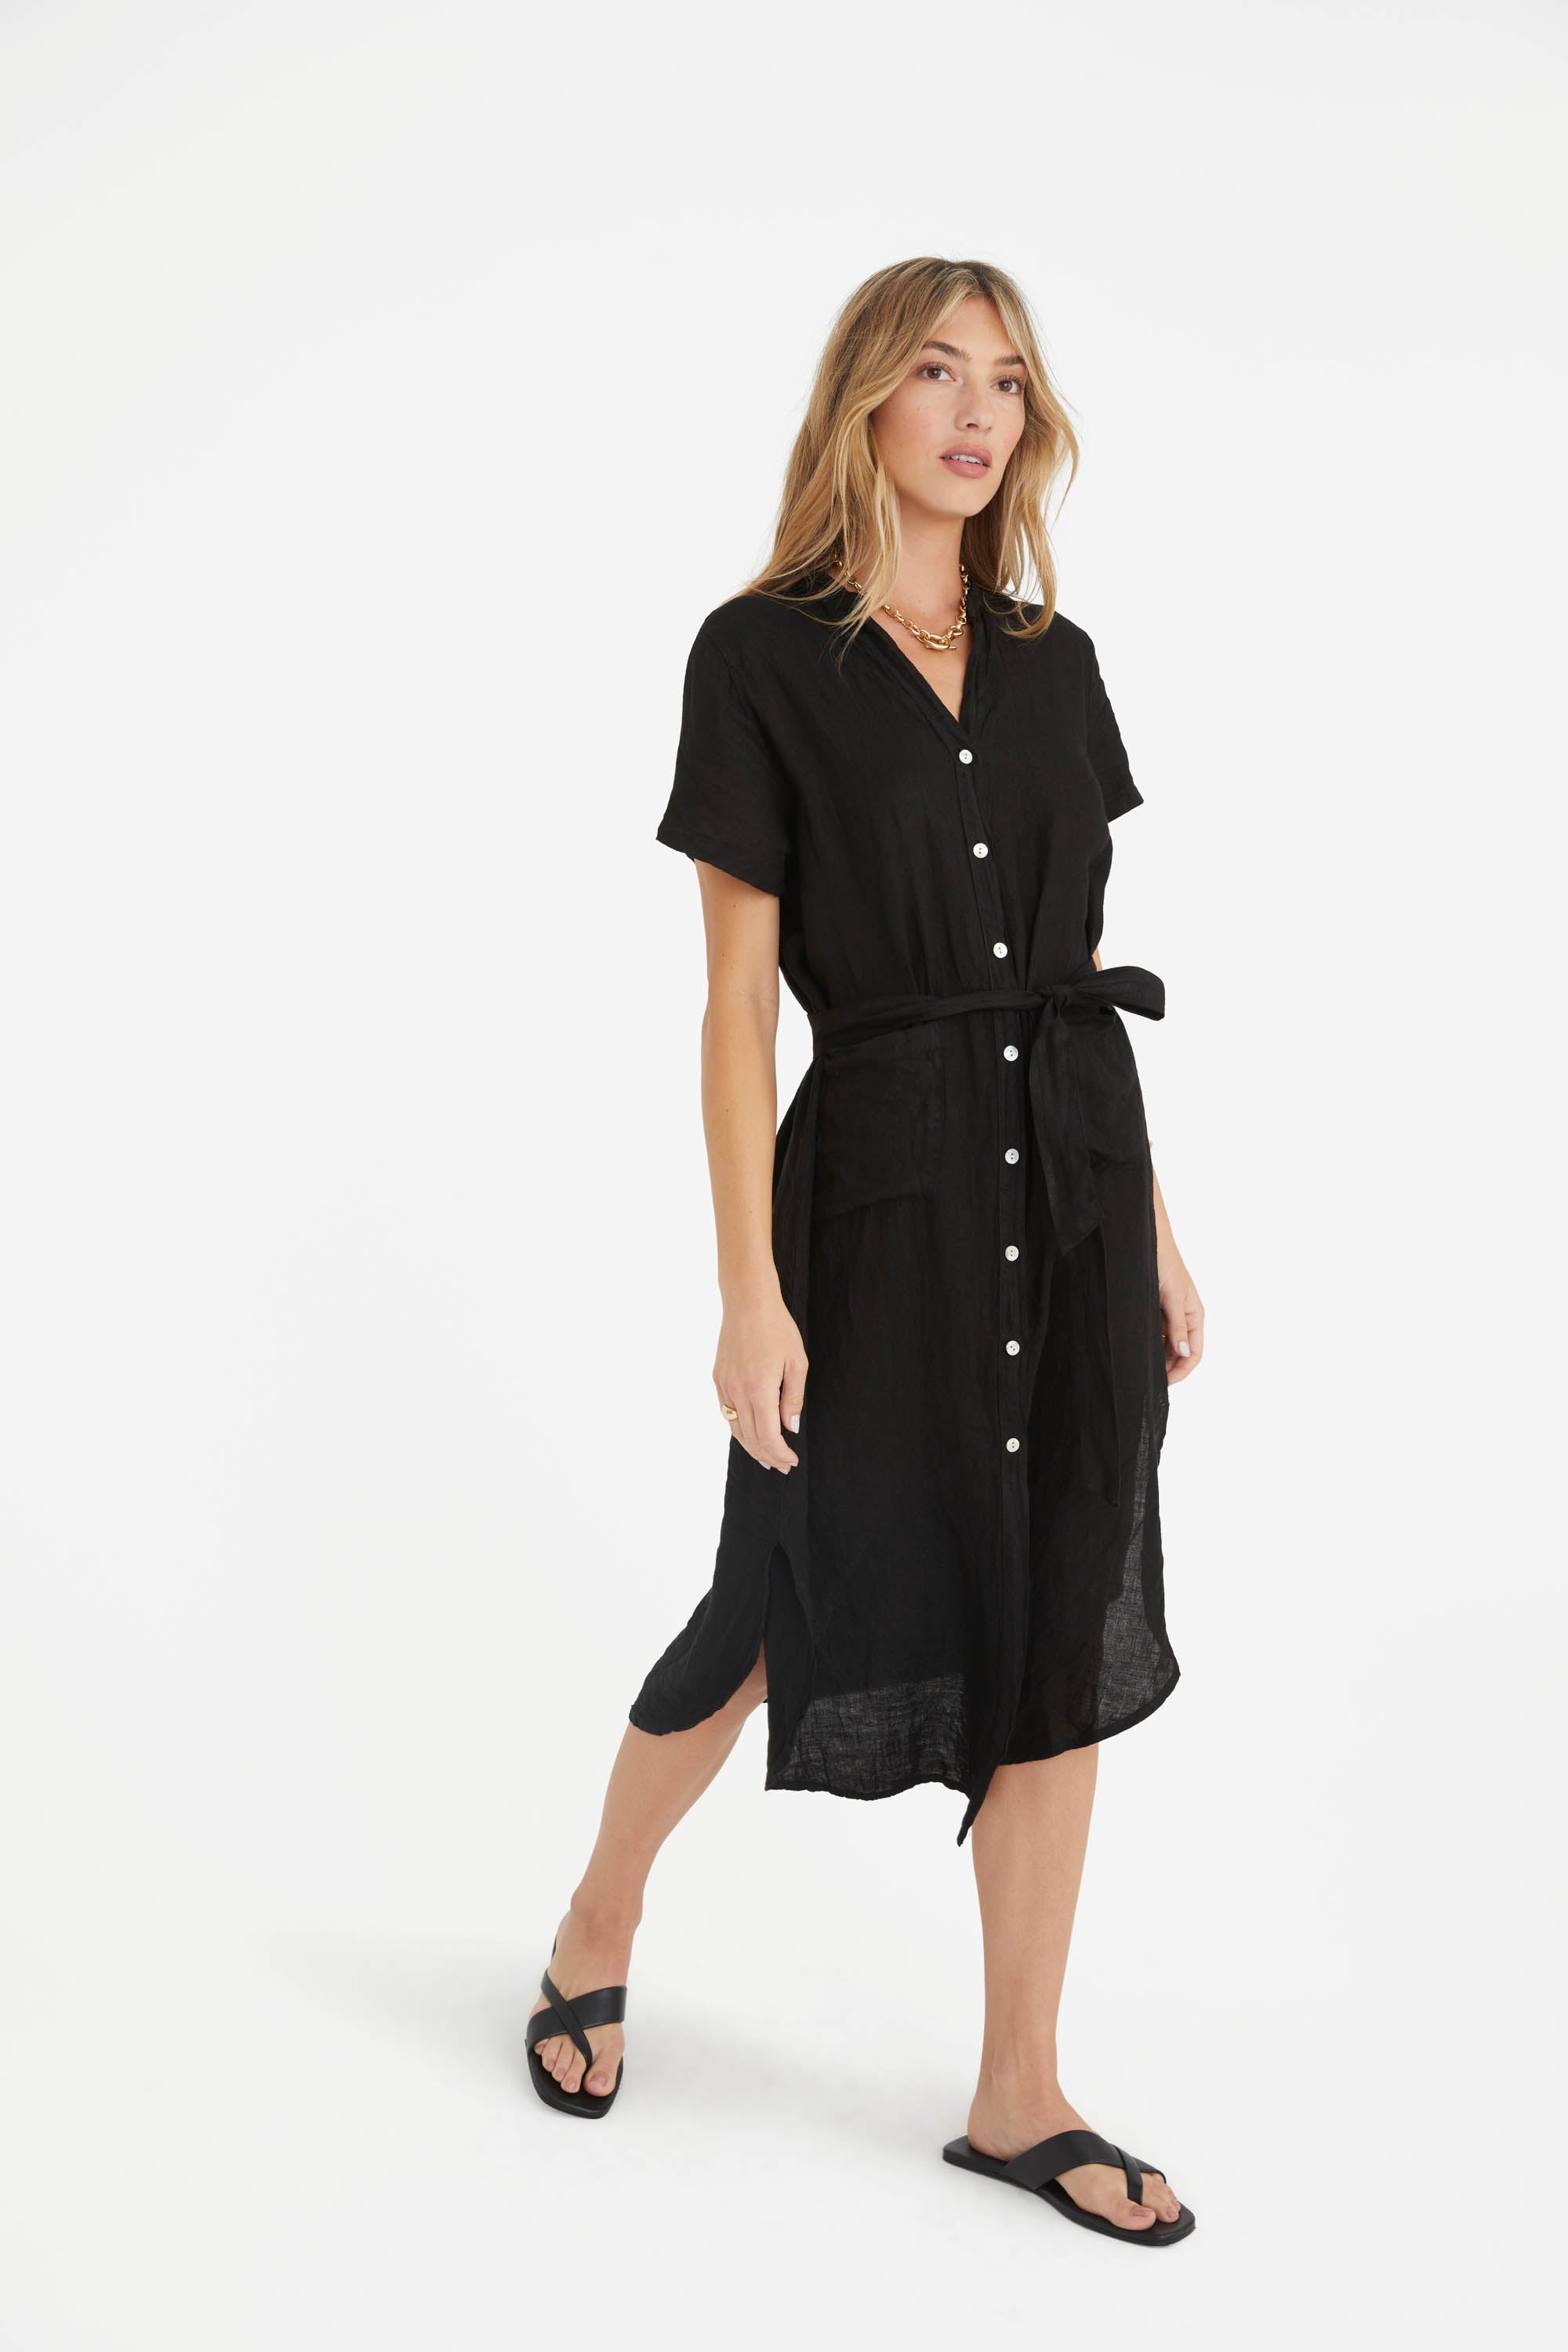 The Rosemary Linen Dress in Black